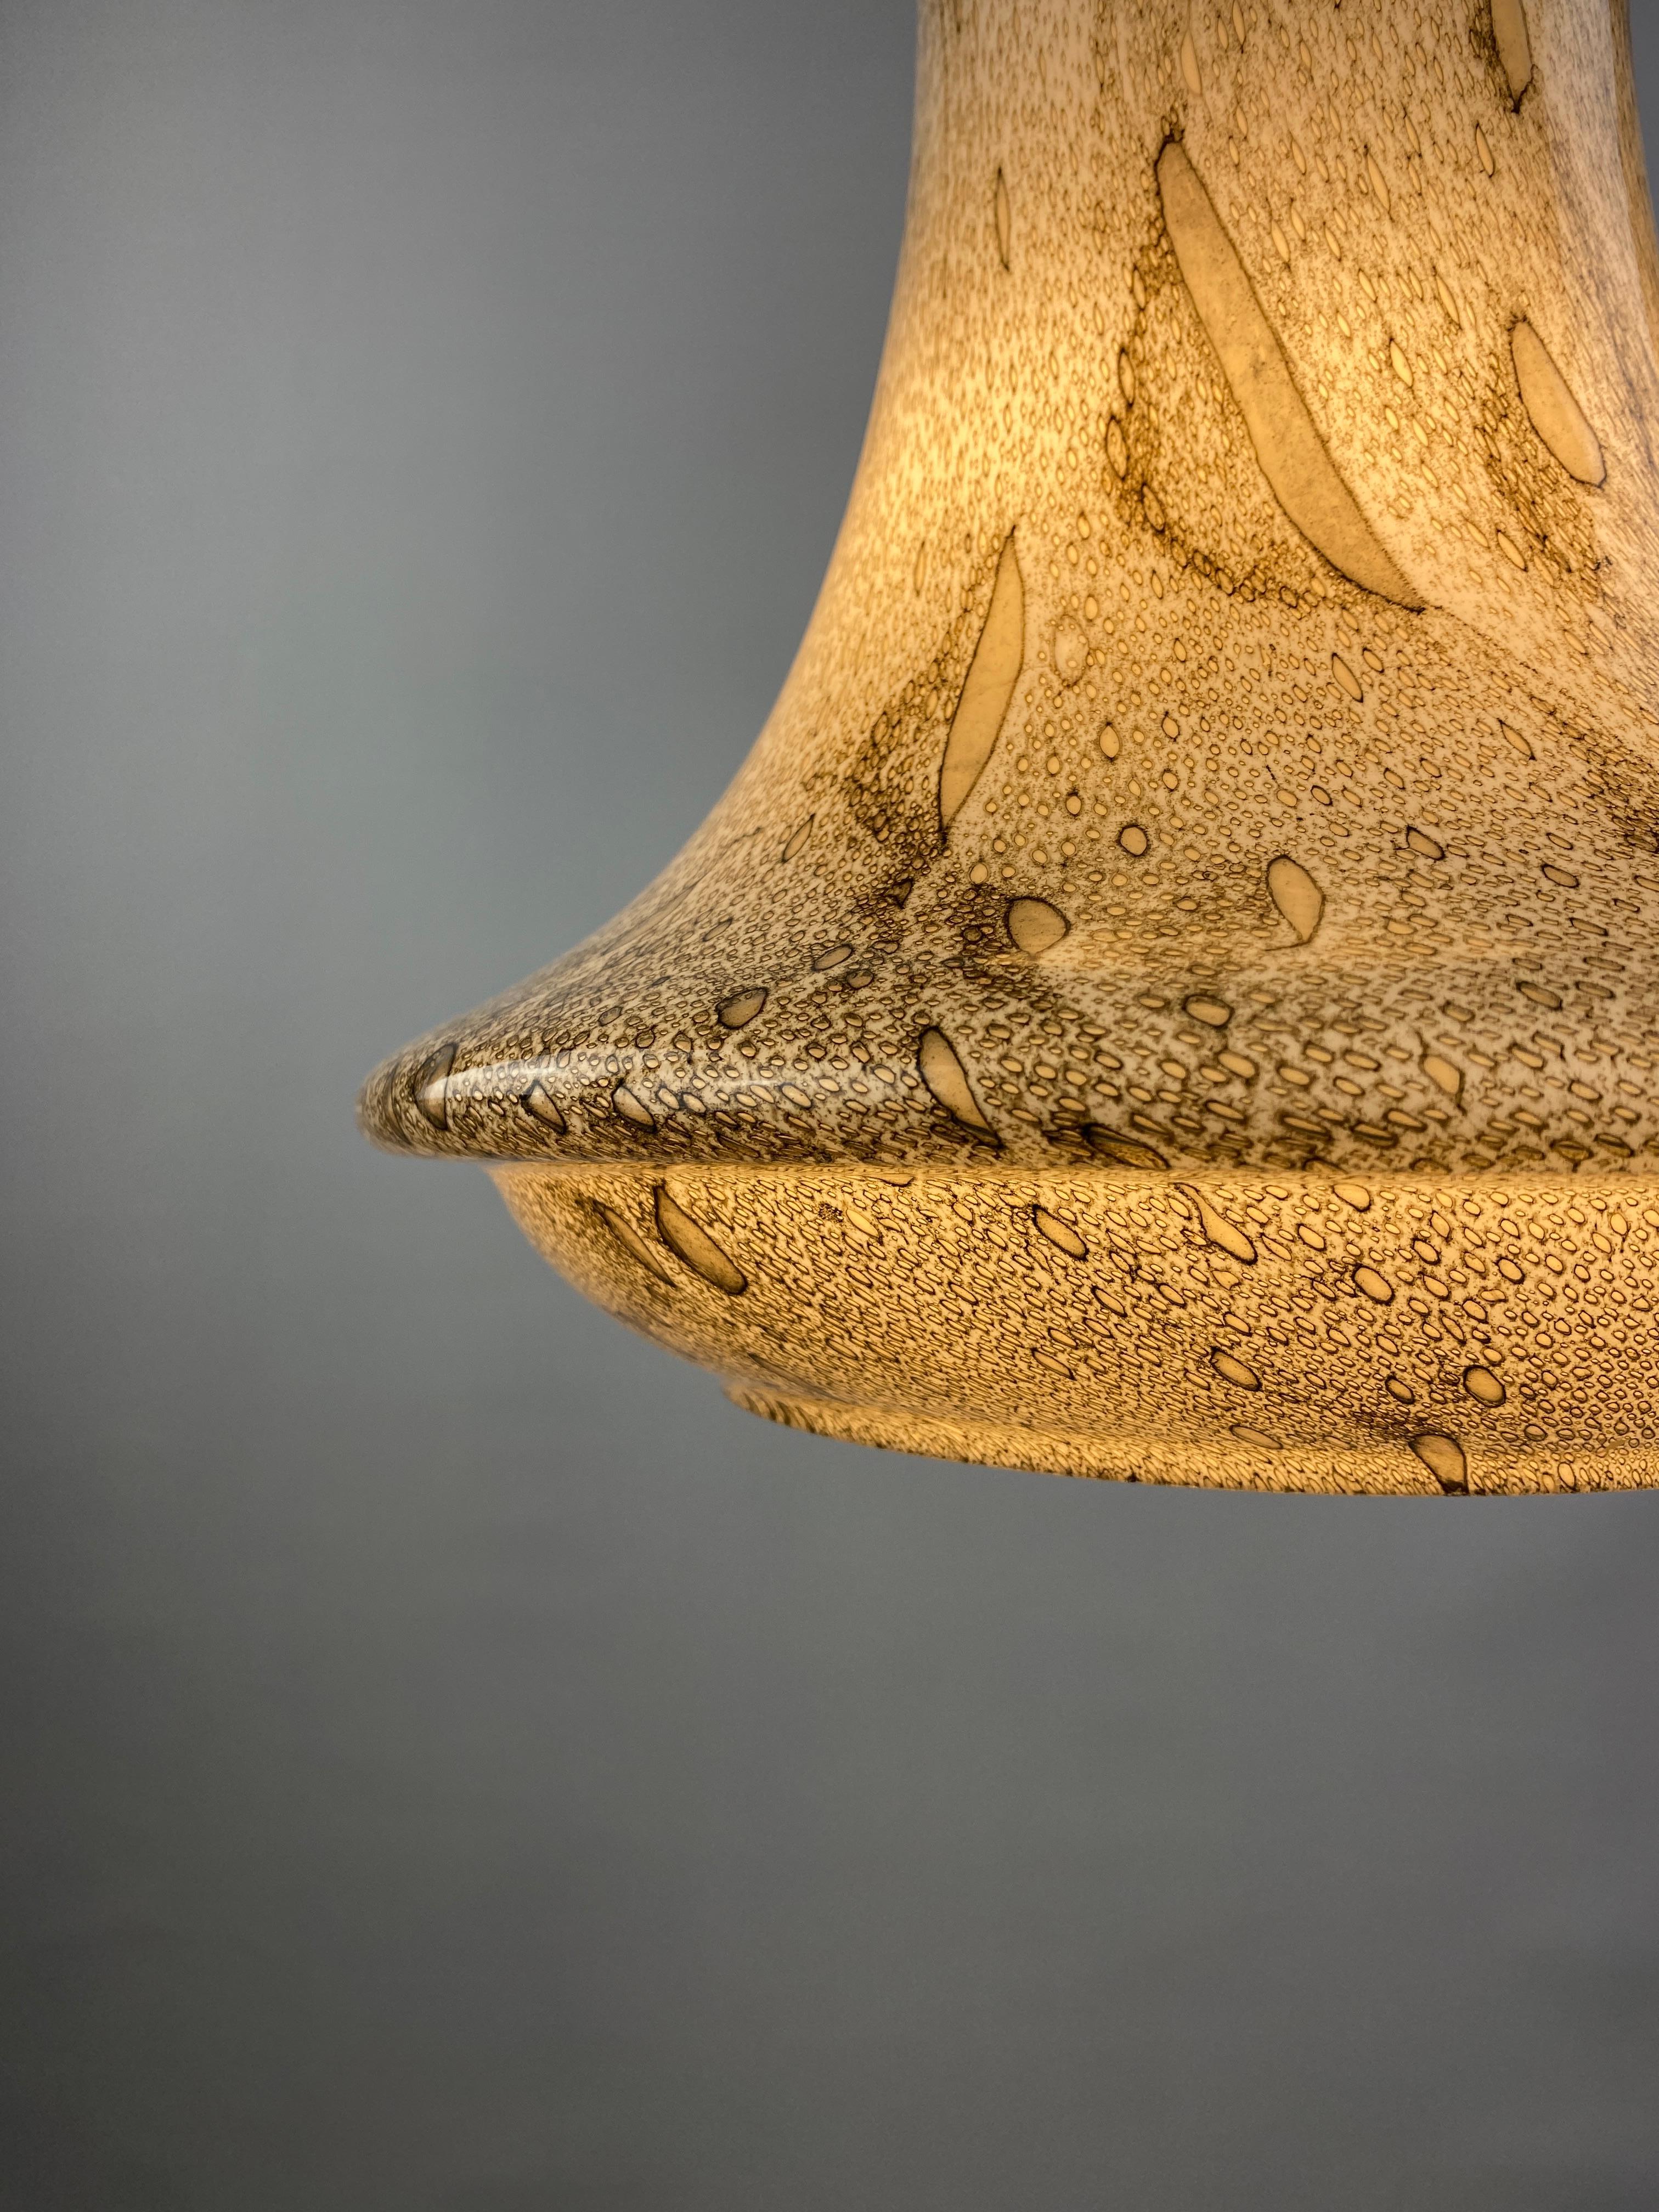 Extraordinaire et rare suspension en verre opalin à motif de peau de serpent, conçue par Viktor Berndt pour la société suédoise Flygsfors dans les années 1960.

Le verre blanc, beige et brun est magnifiquement soufflé pour former ce motif unique de